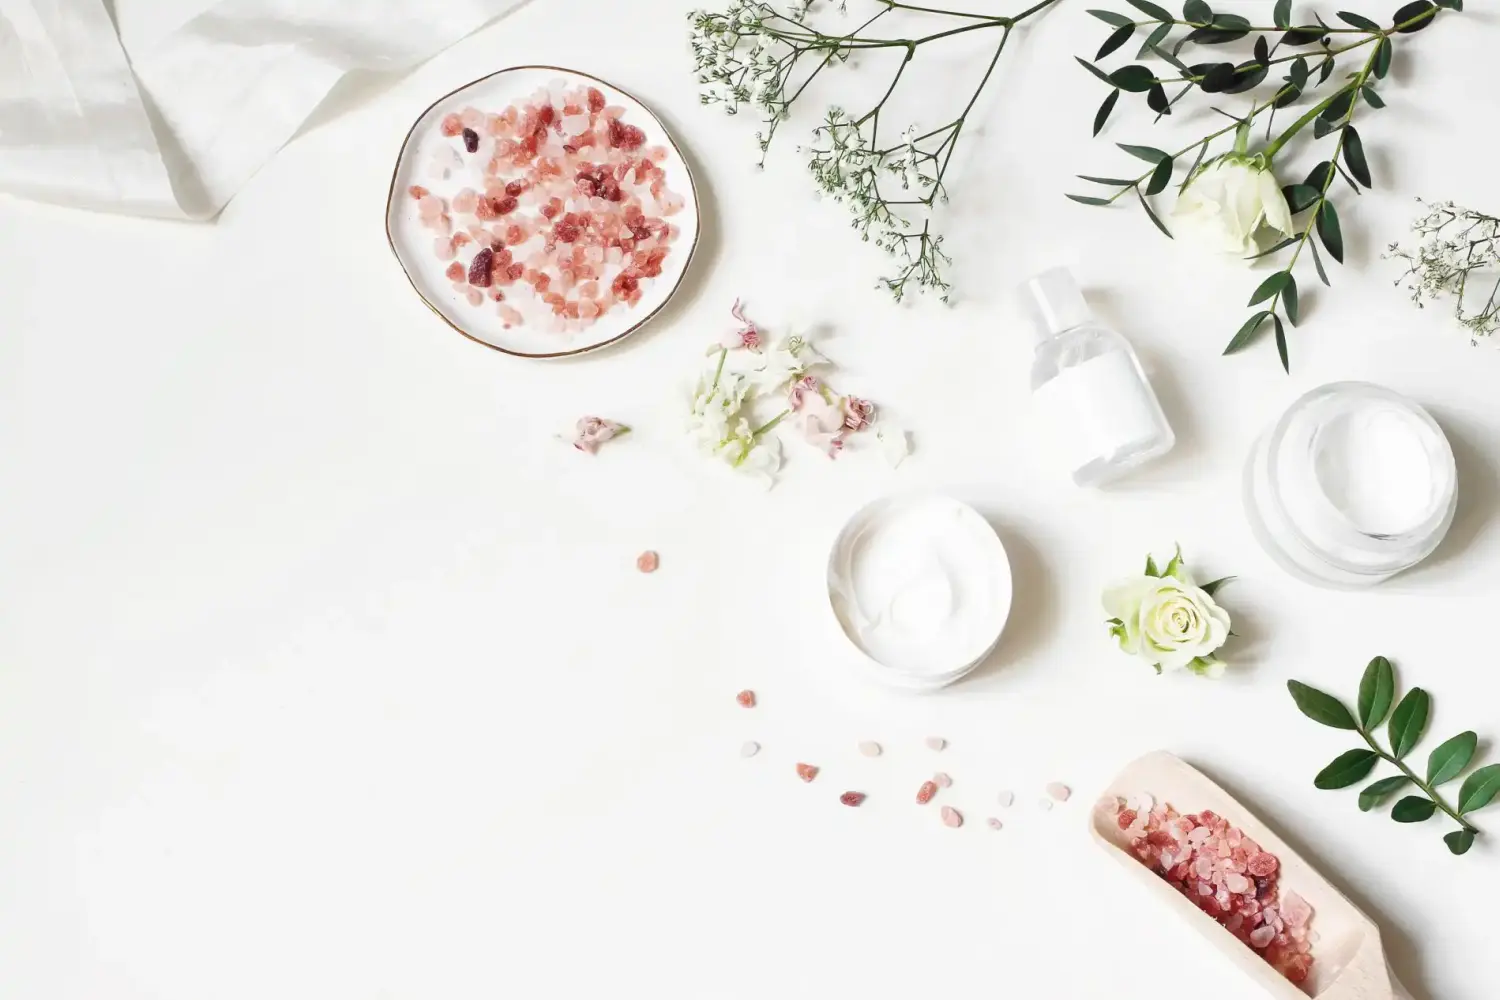 Hautcreme, Tonicum-Flasche, Trockenblumen, Blätter, Rose und Himalaya-Salz. Weißer Tischhintergrund